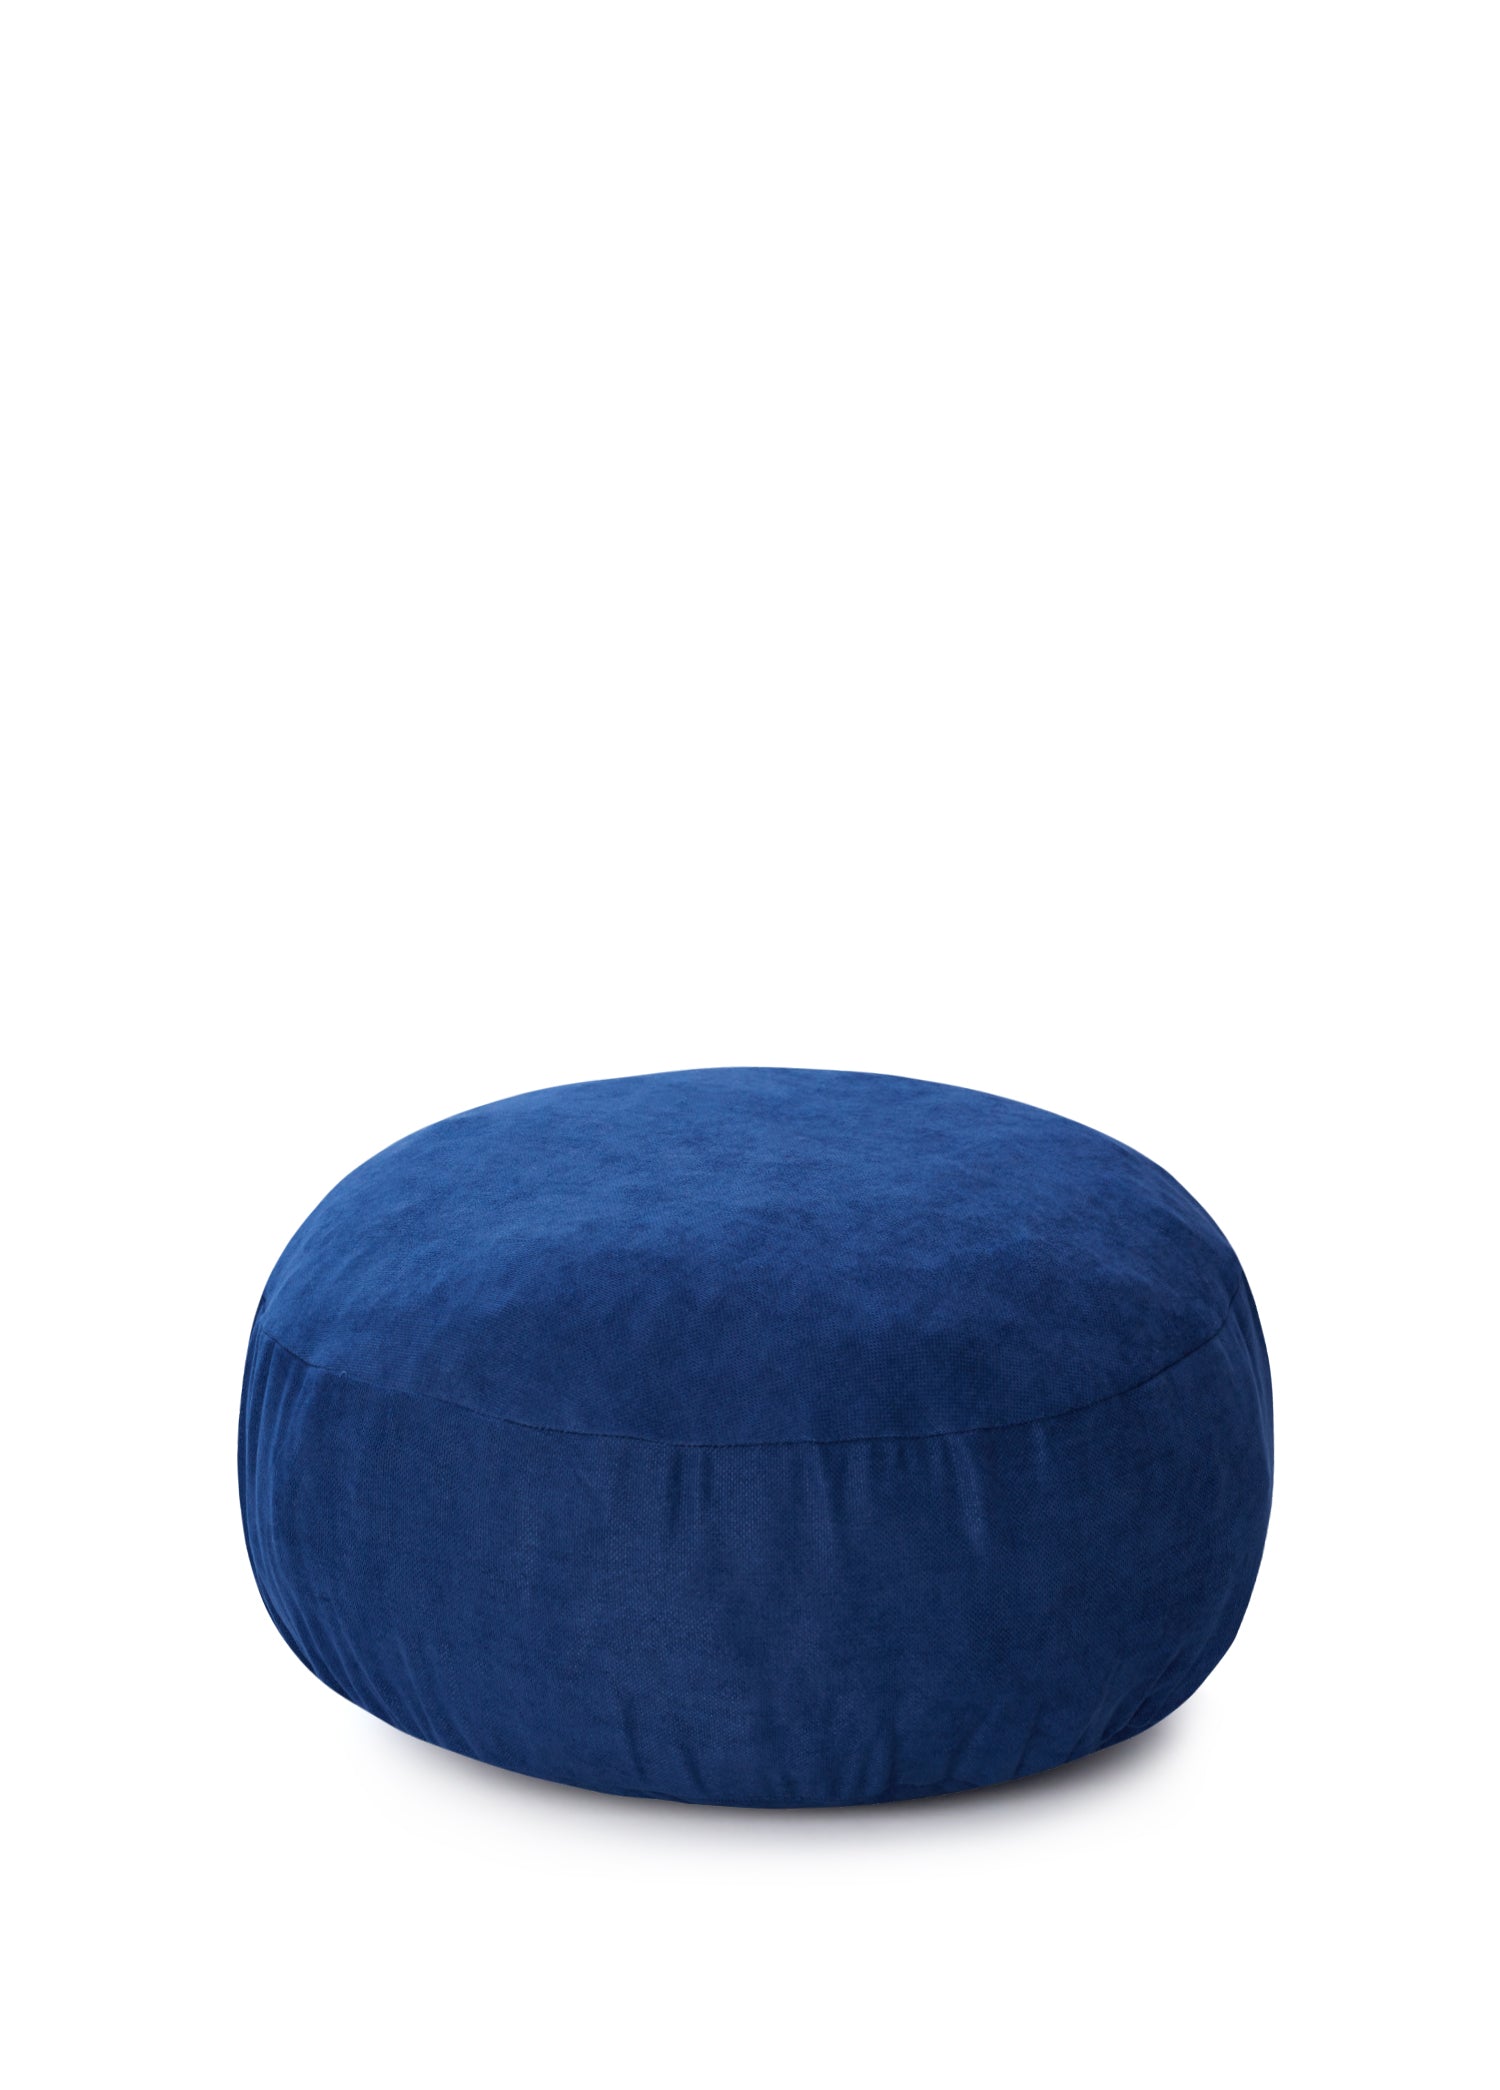 Dark Blue Meditation Cushion 40 Cm Diameter